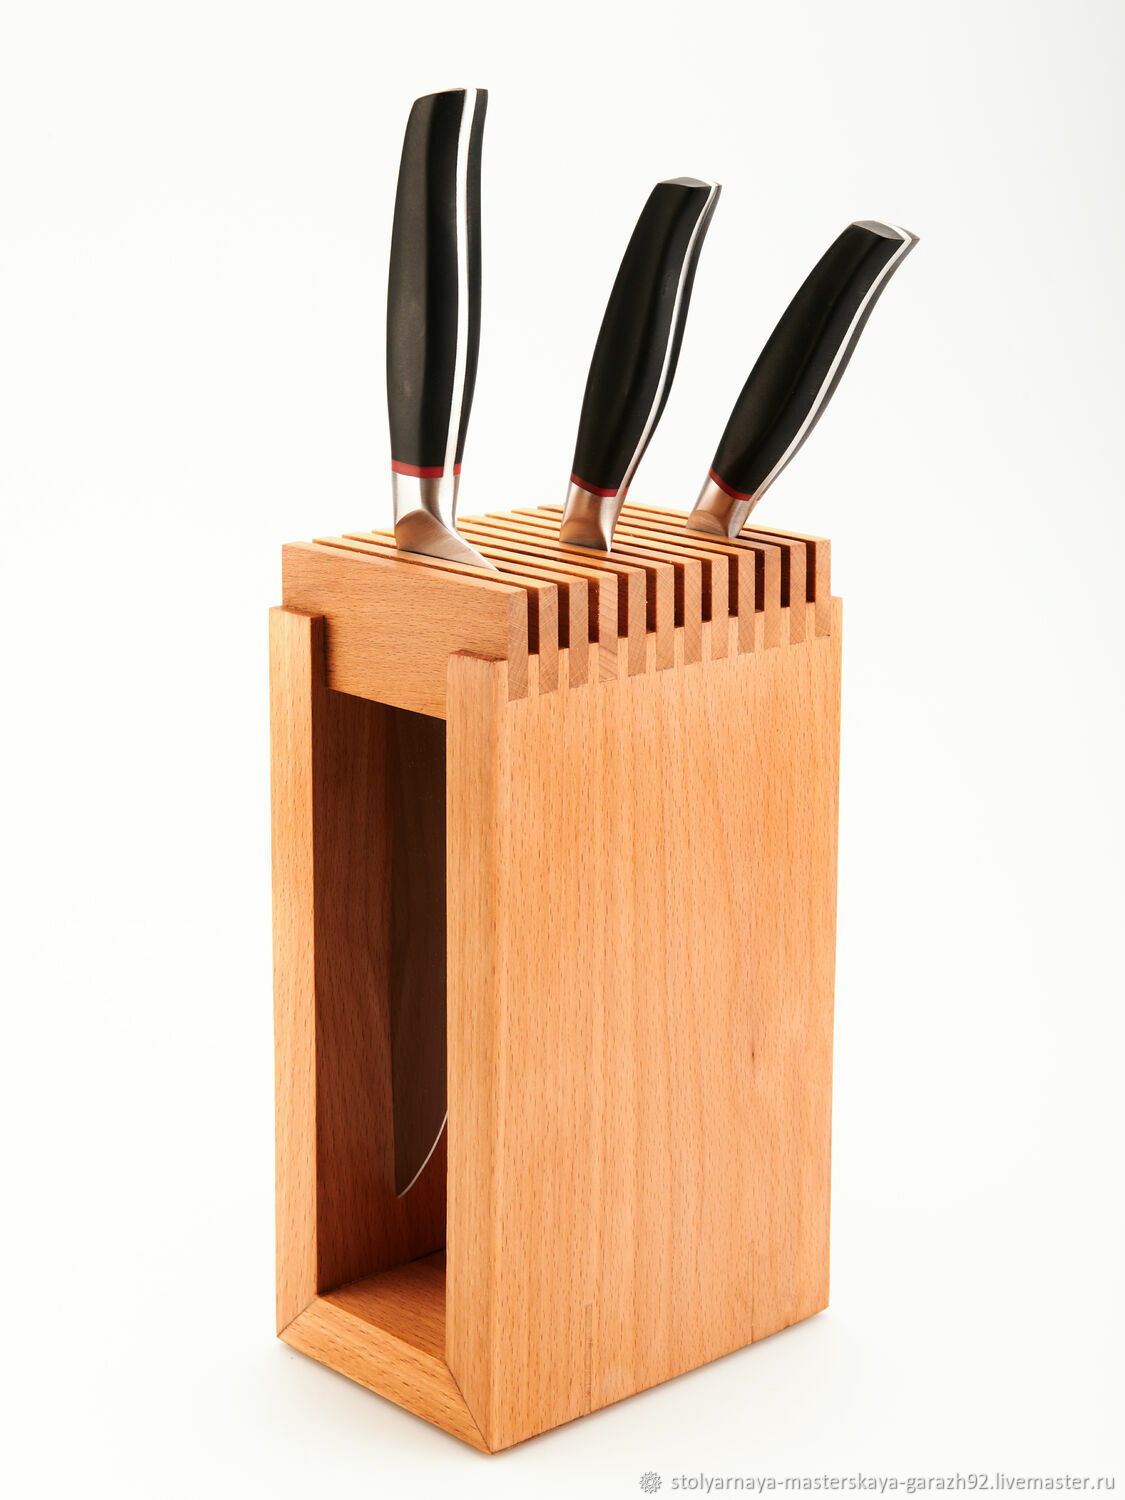 Купить деревянную подставку для ножей в интернет магазине Vazaro